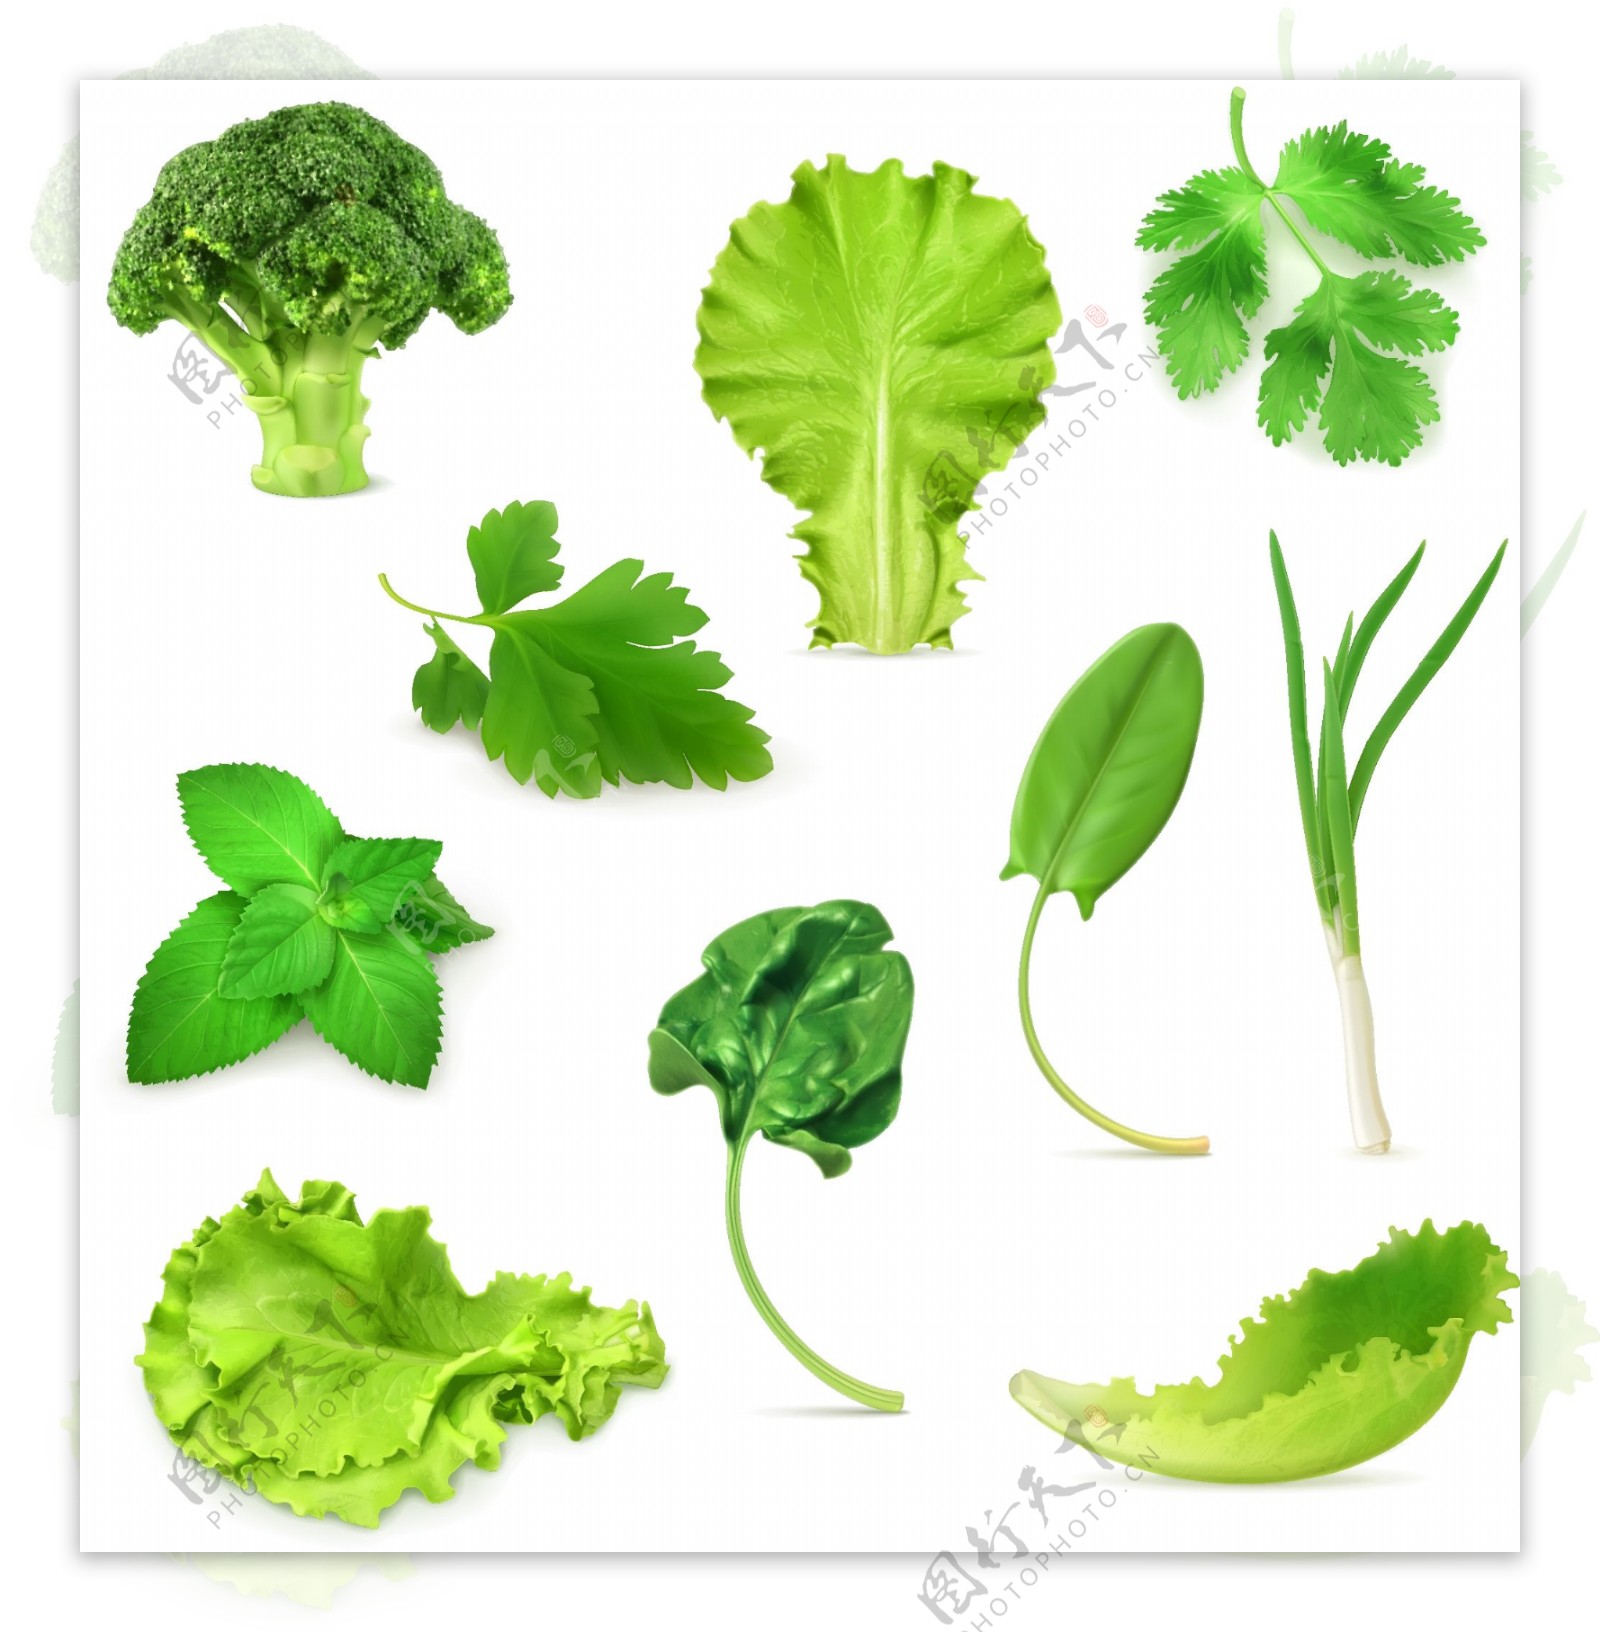 多款绿色蔬菜植物叶片矢量素材